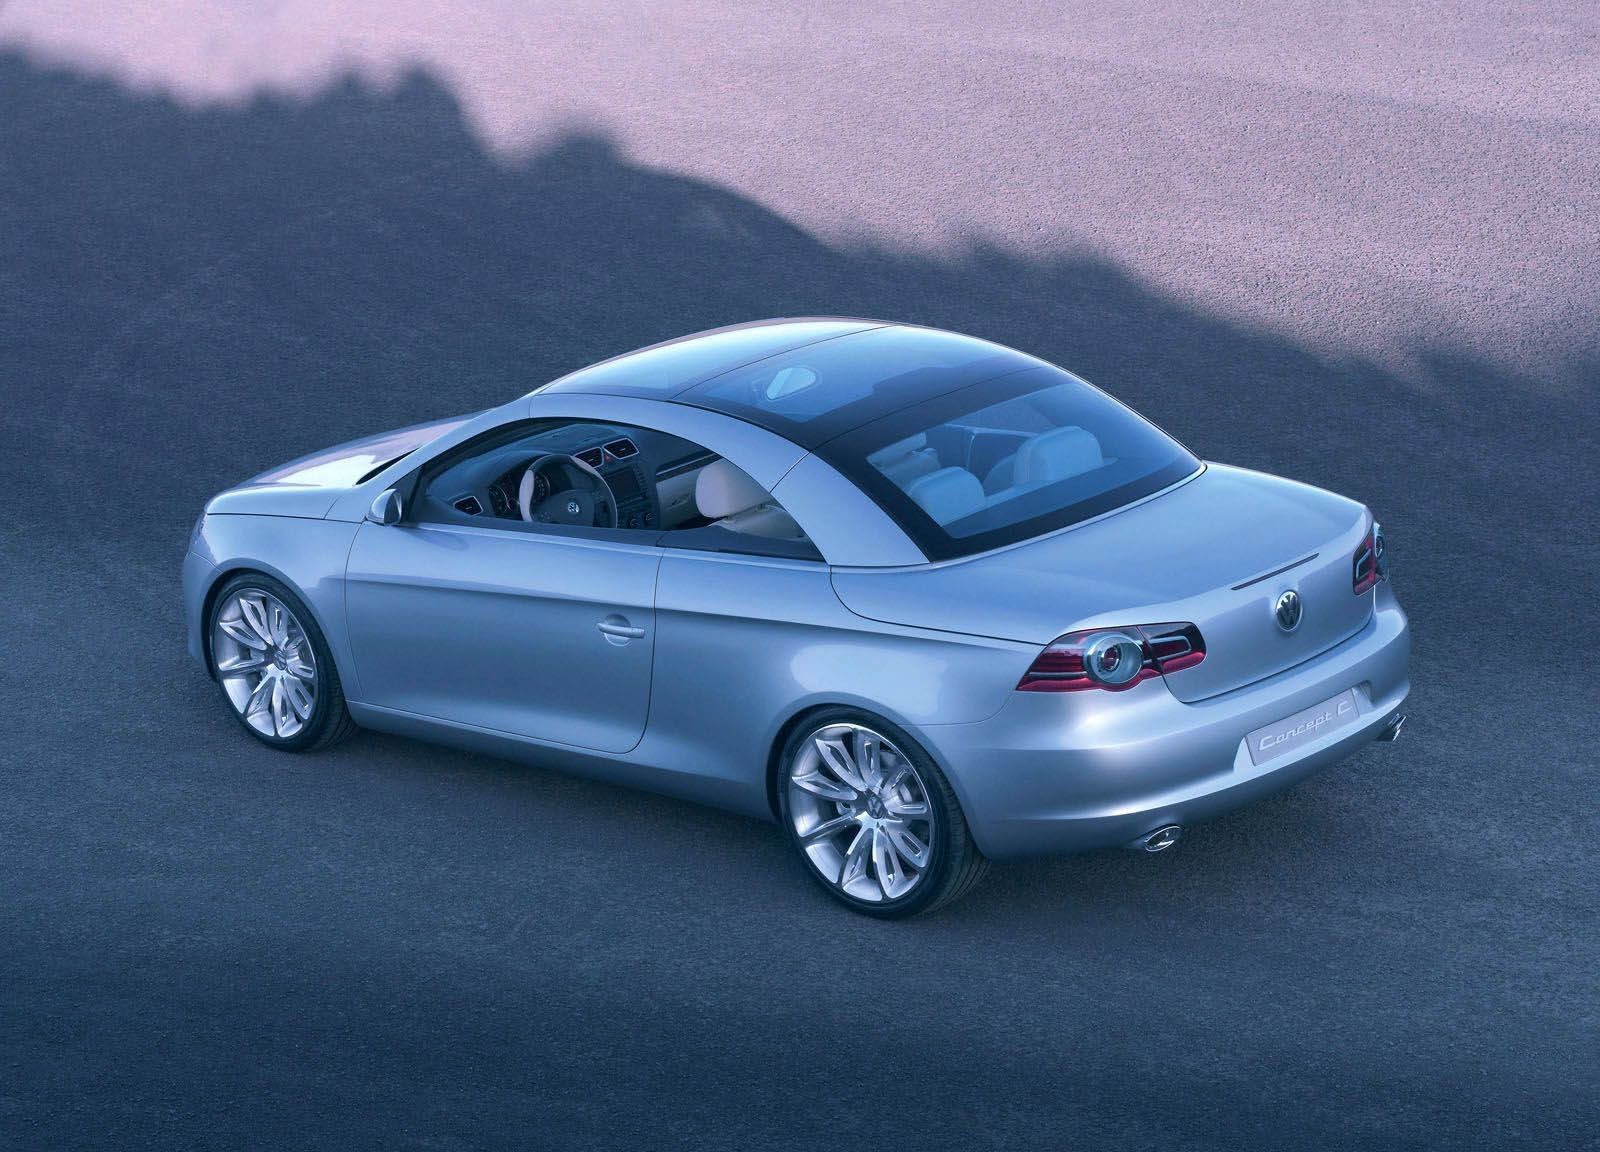 2004 Volkswagen Concept C